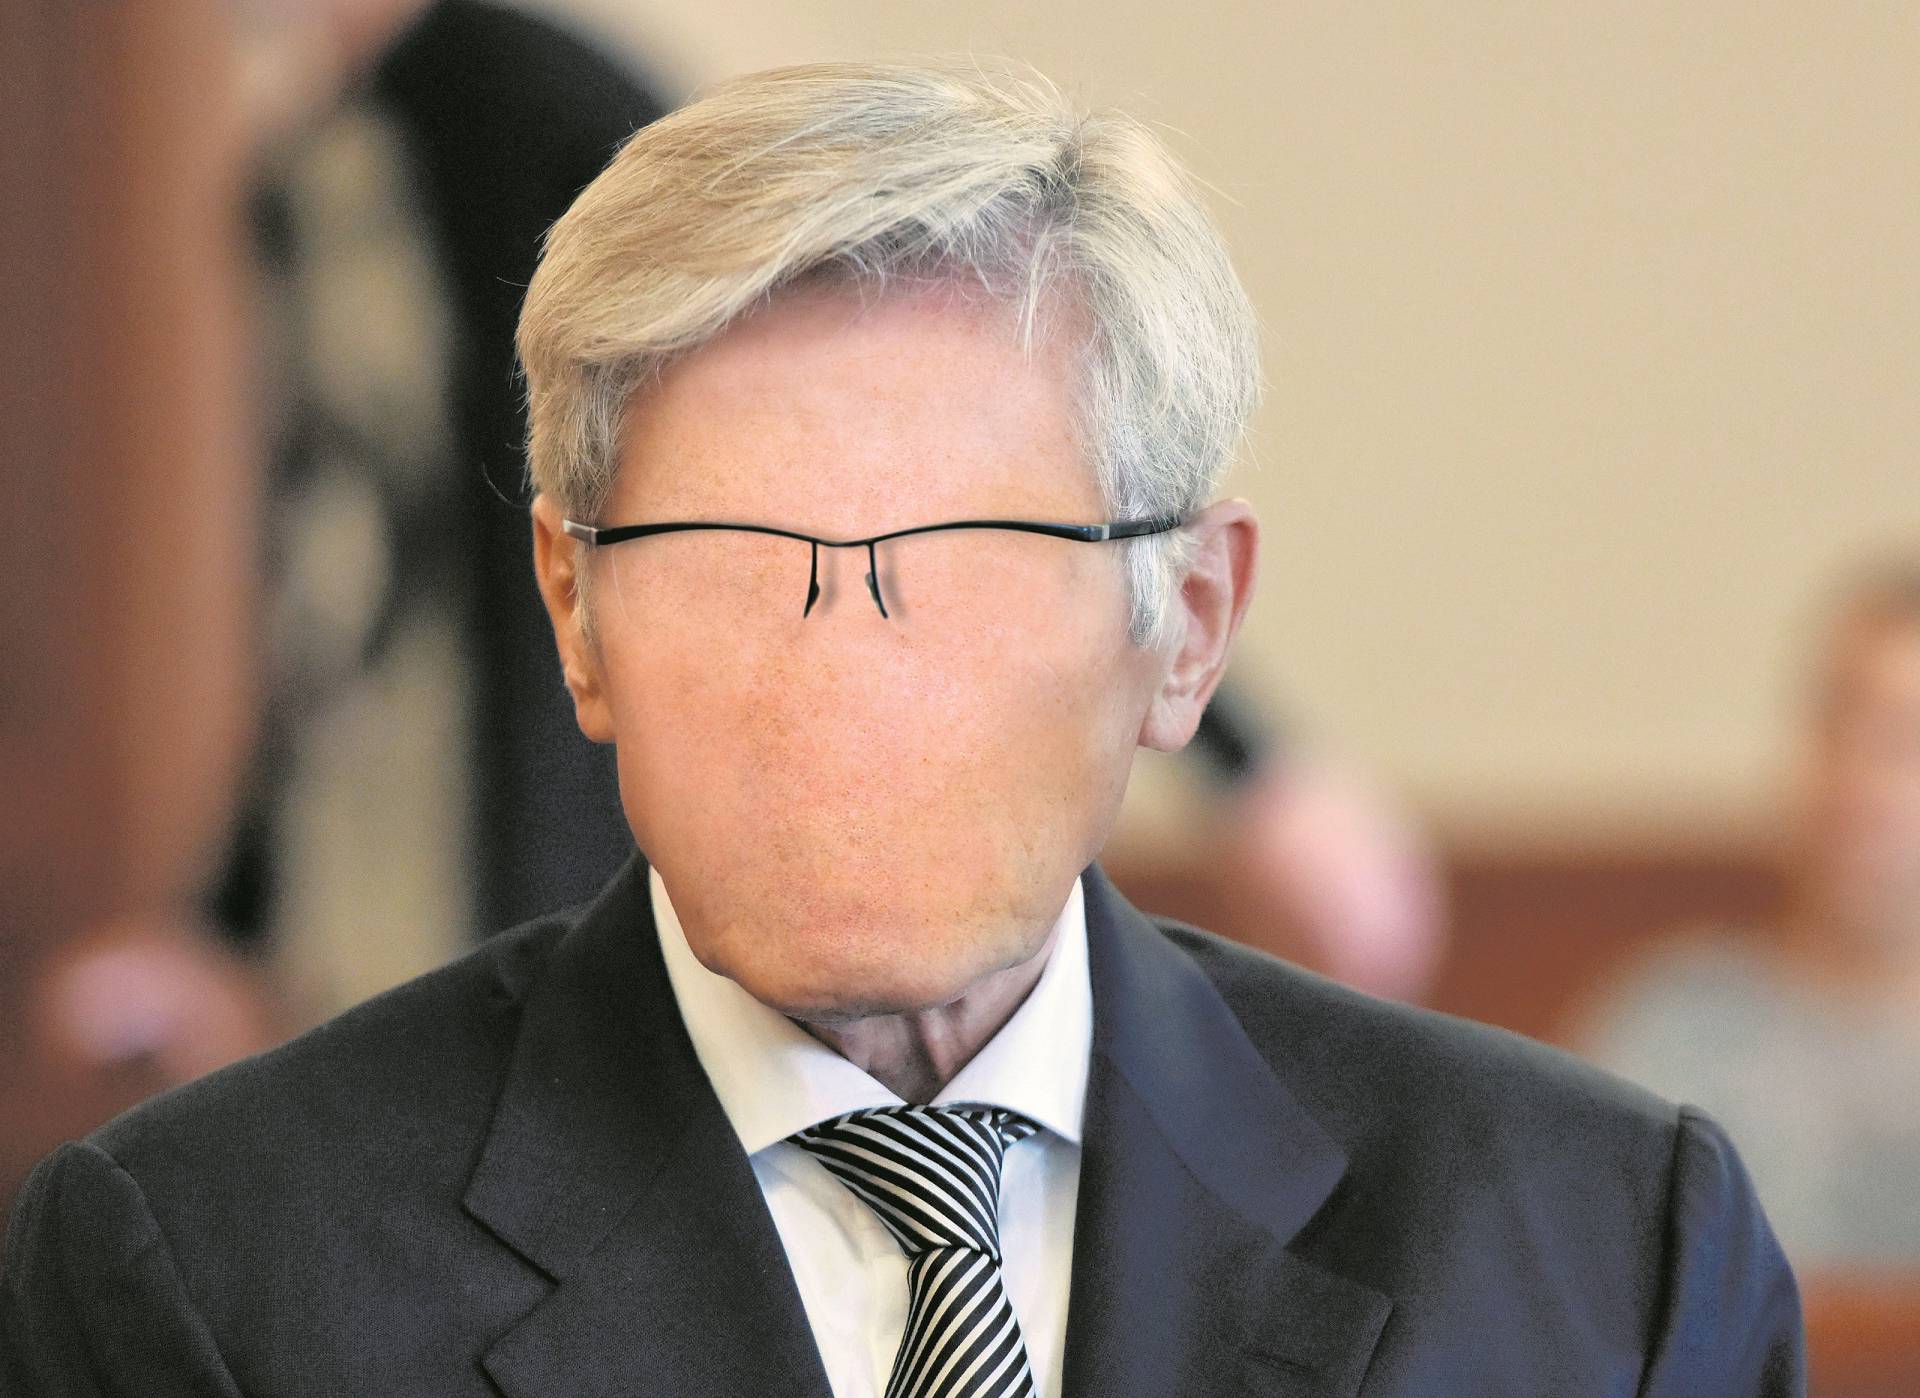 Tomi Horvatinčiću treći put će presuditi. Ali nepravomoćno...